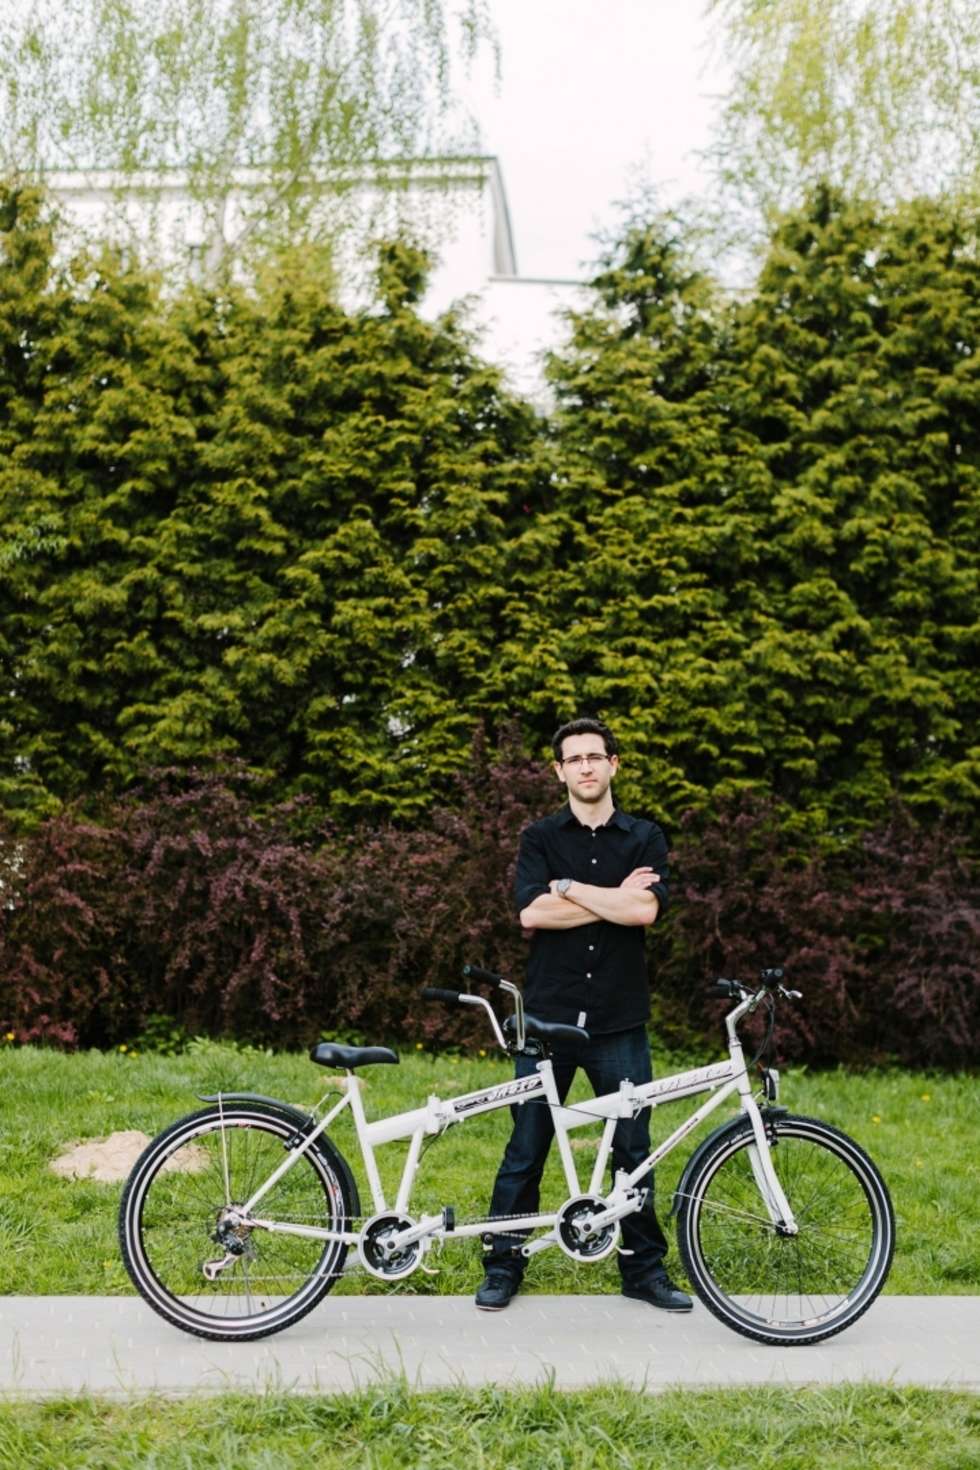  Andrzej Stanowski Konstruktor rowerów. Buduje tandemy, dzięki którym ludzie odzyskują wiarę w swoje możliwości.